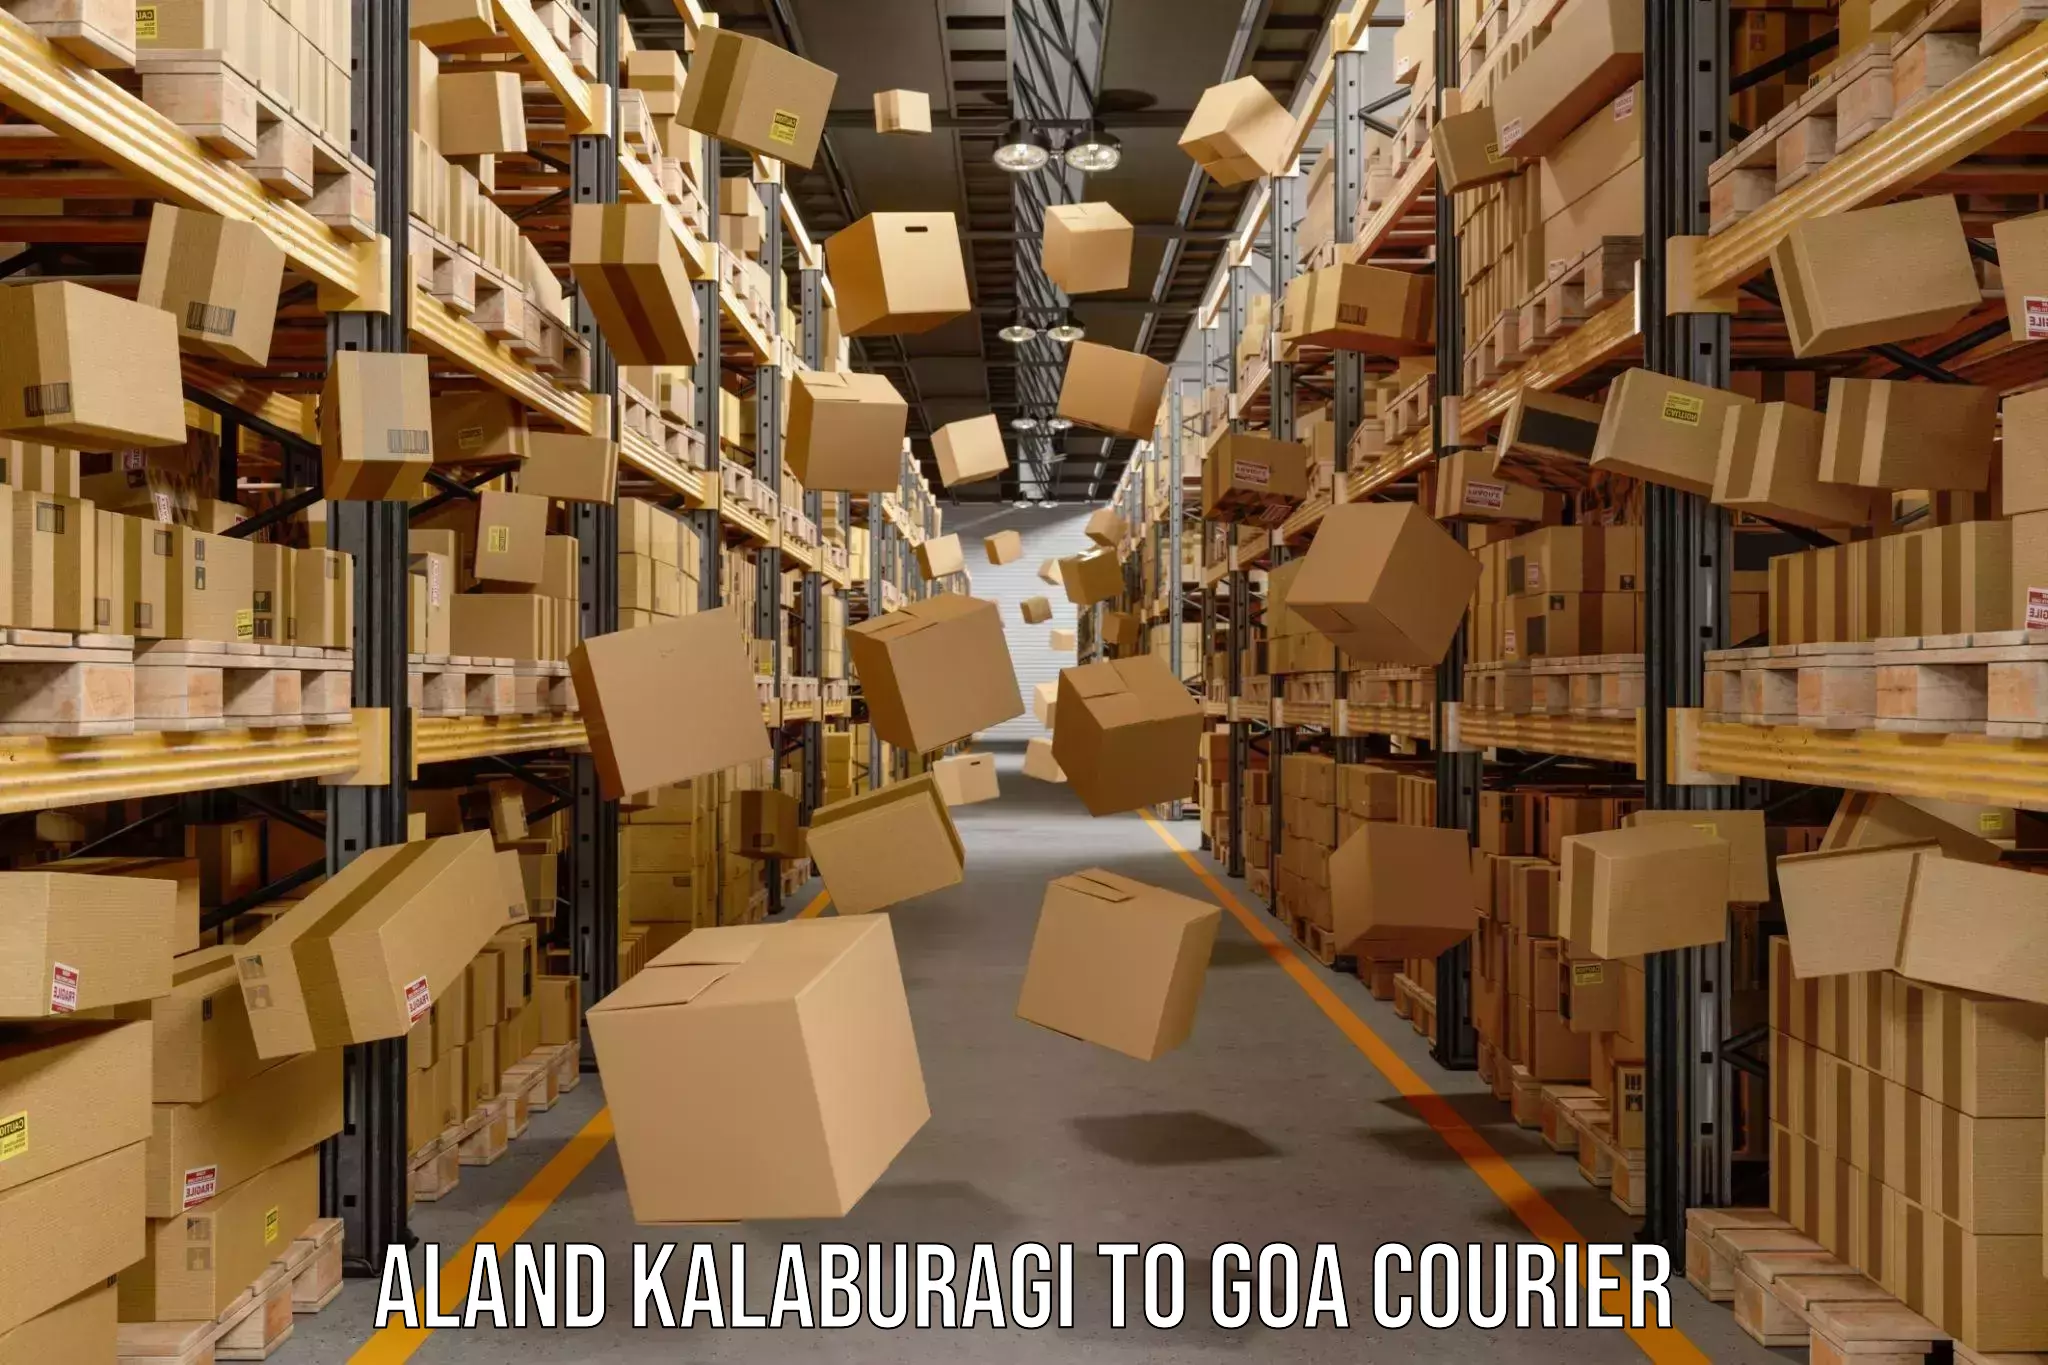 Professional courier services Aland Kalaburagi to Goa